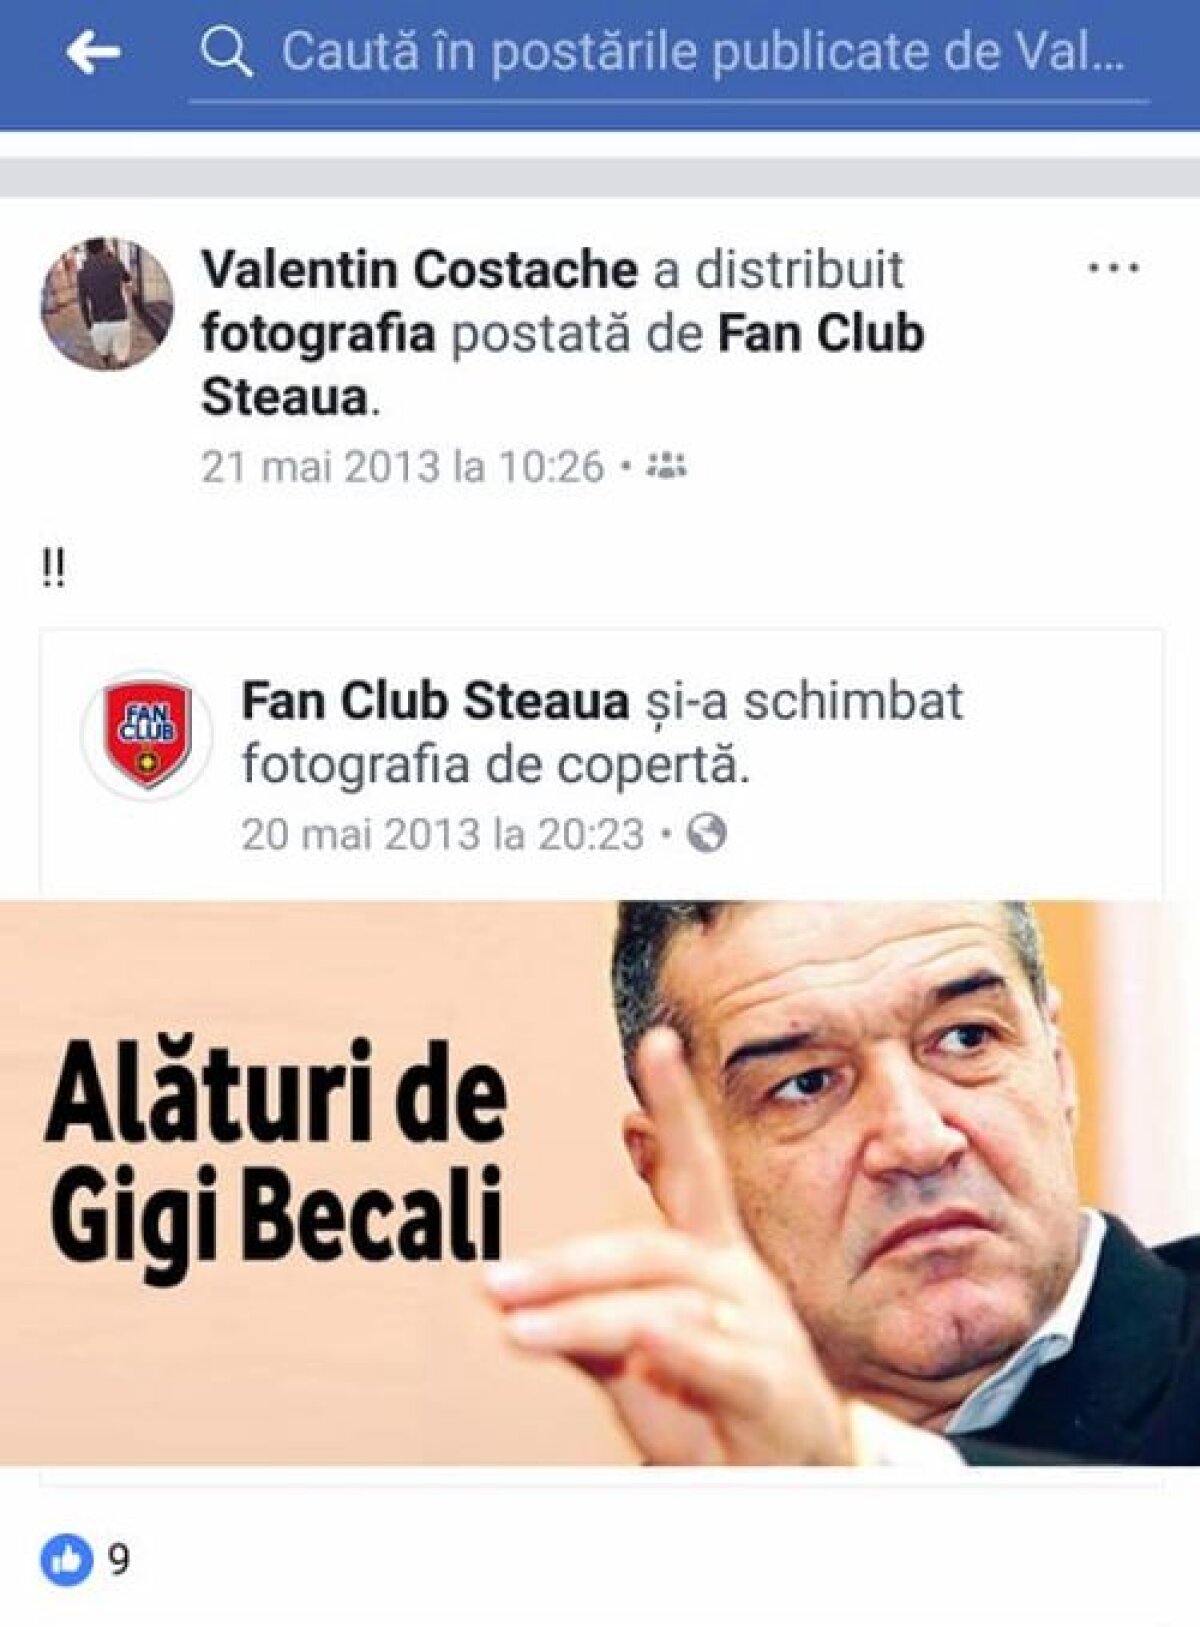 GALERIE FOTO Scandal online cu Valentin Costache: "Când țin cu Steaua, mă dau mare, mă dau mare" » Reacția fotbalistului, după apariția imaginilor